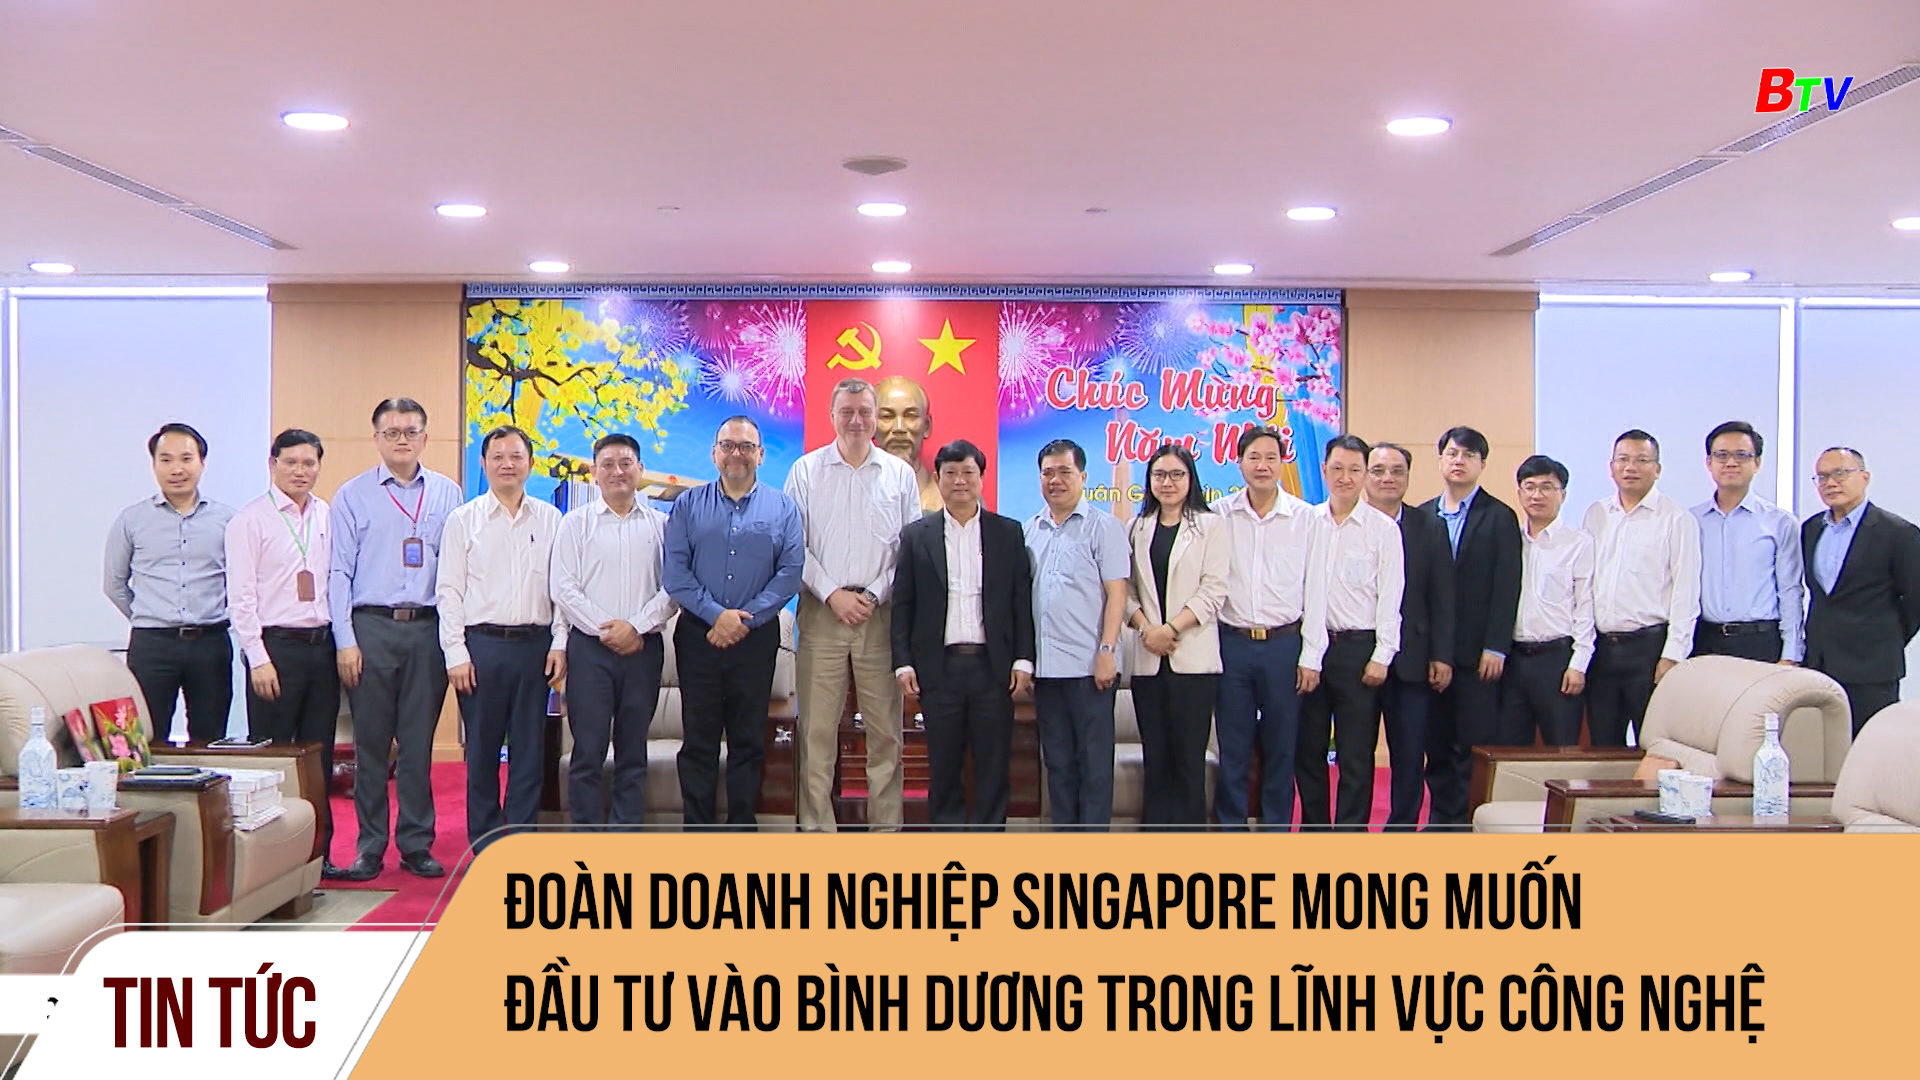 Đoàn doanh nghiệp Singapore mong muốn đầu tư vào Bình Dương trong lĩnh vực công nghệ cao	